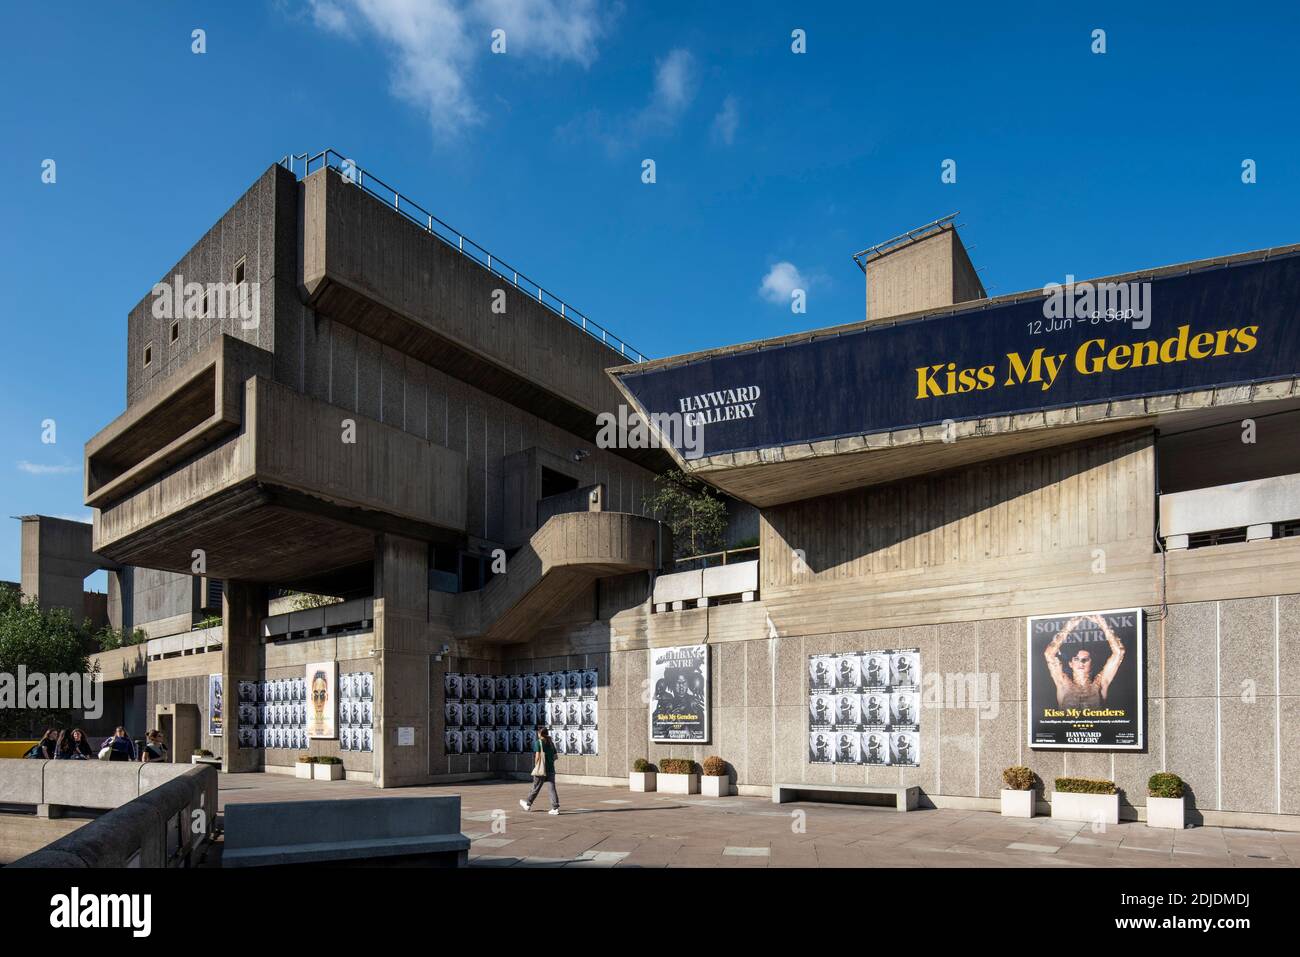 Ripresa dal basso, l'immagine mostra il drammatico sbalzo della struttura in calcestruzzo. Hayward Gallery, Londra, Regno Unito. Architetto: Higgs and Hill, Foto Stock